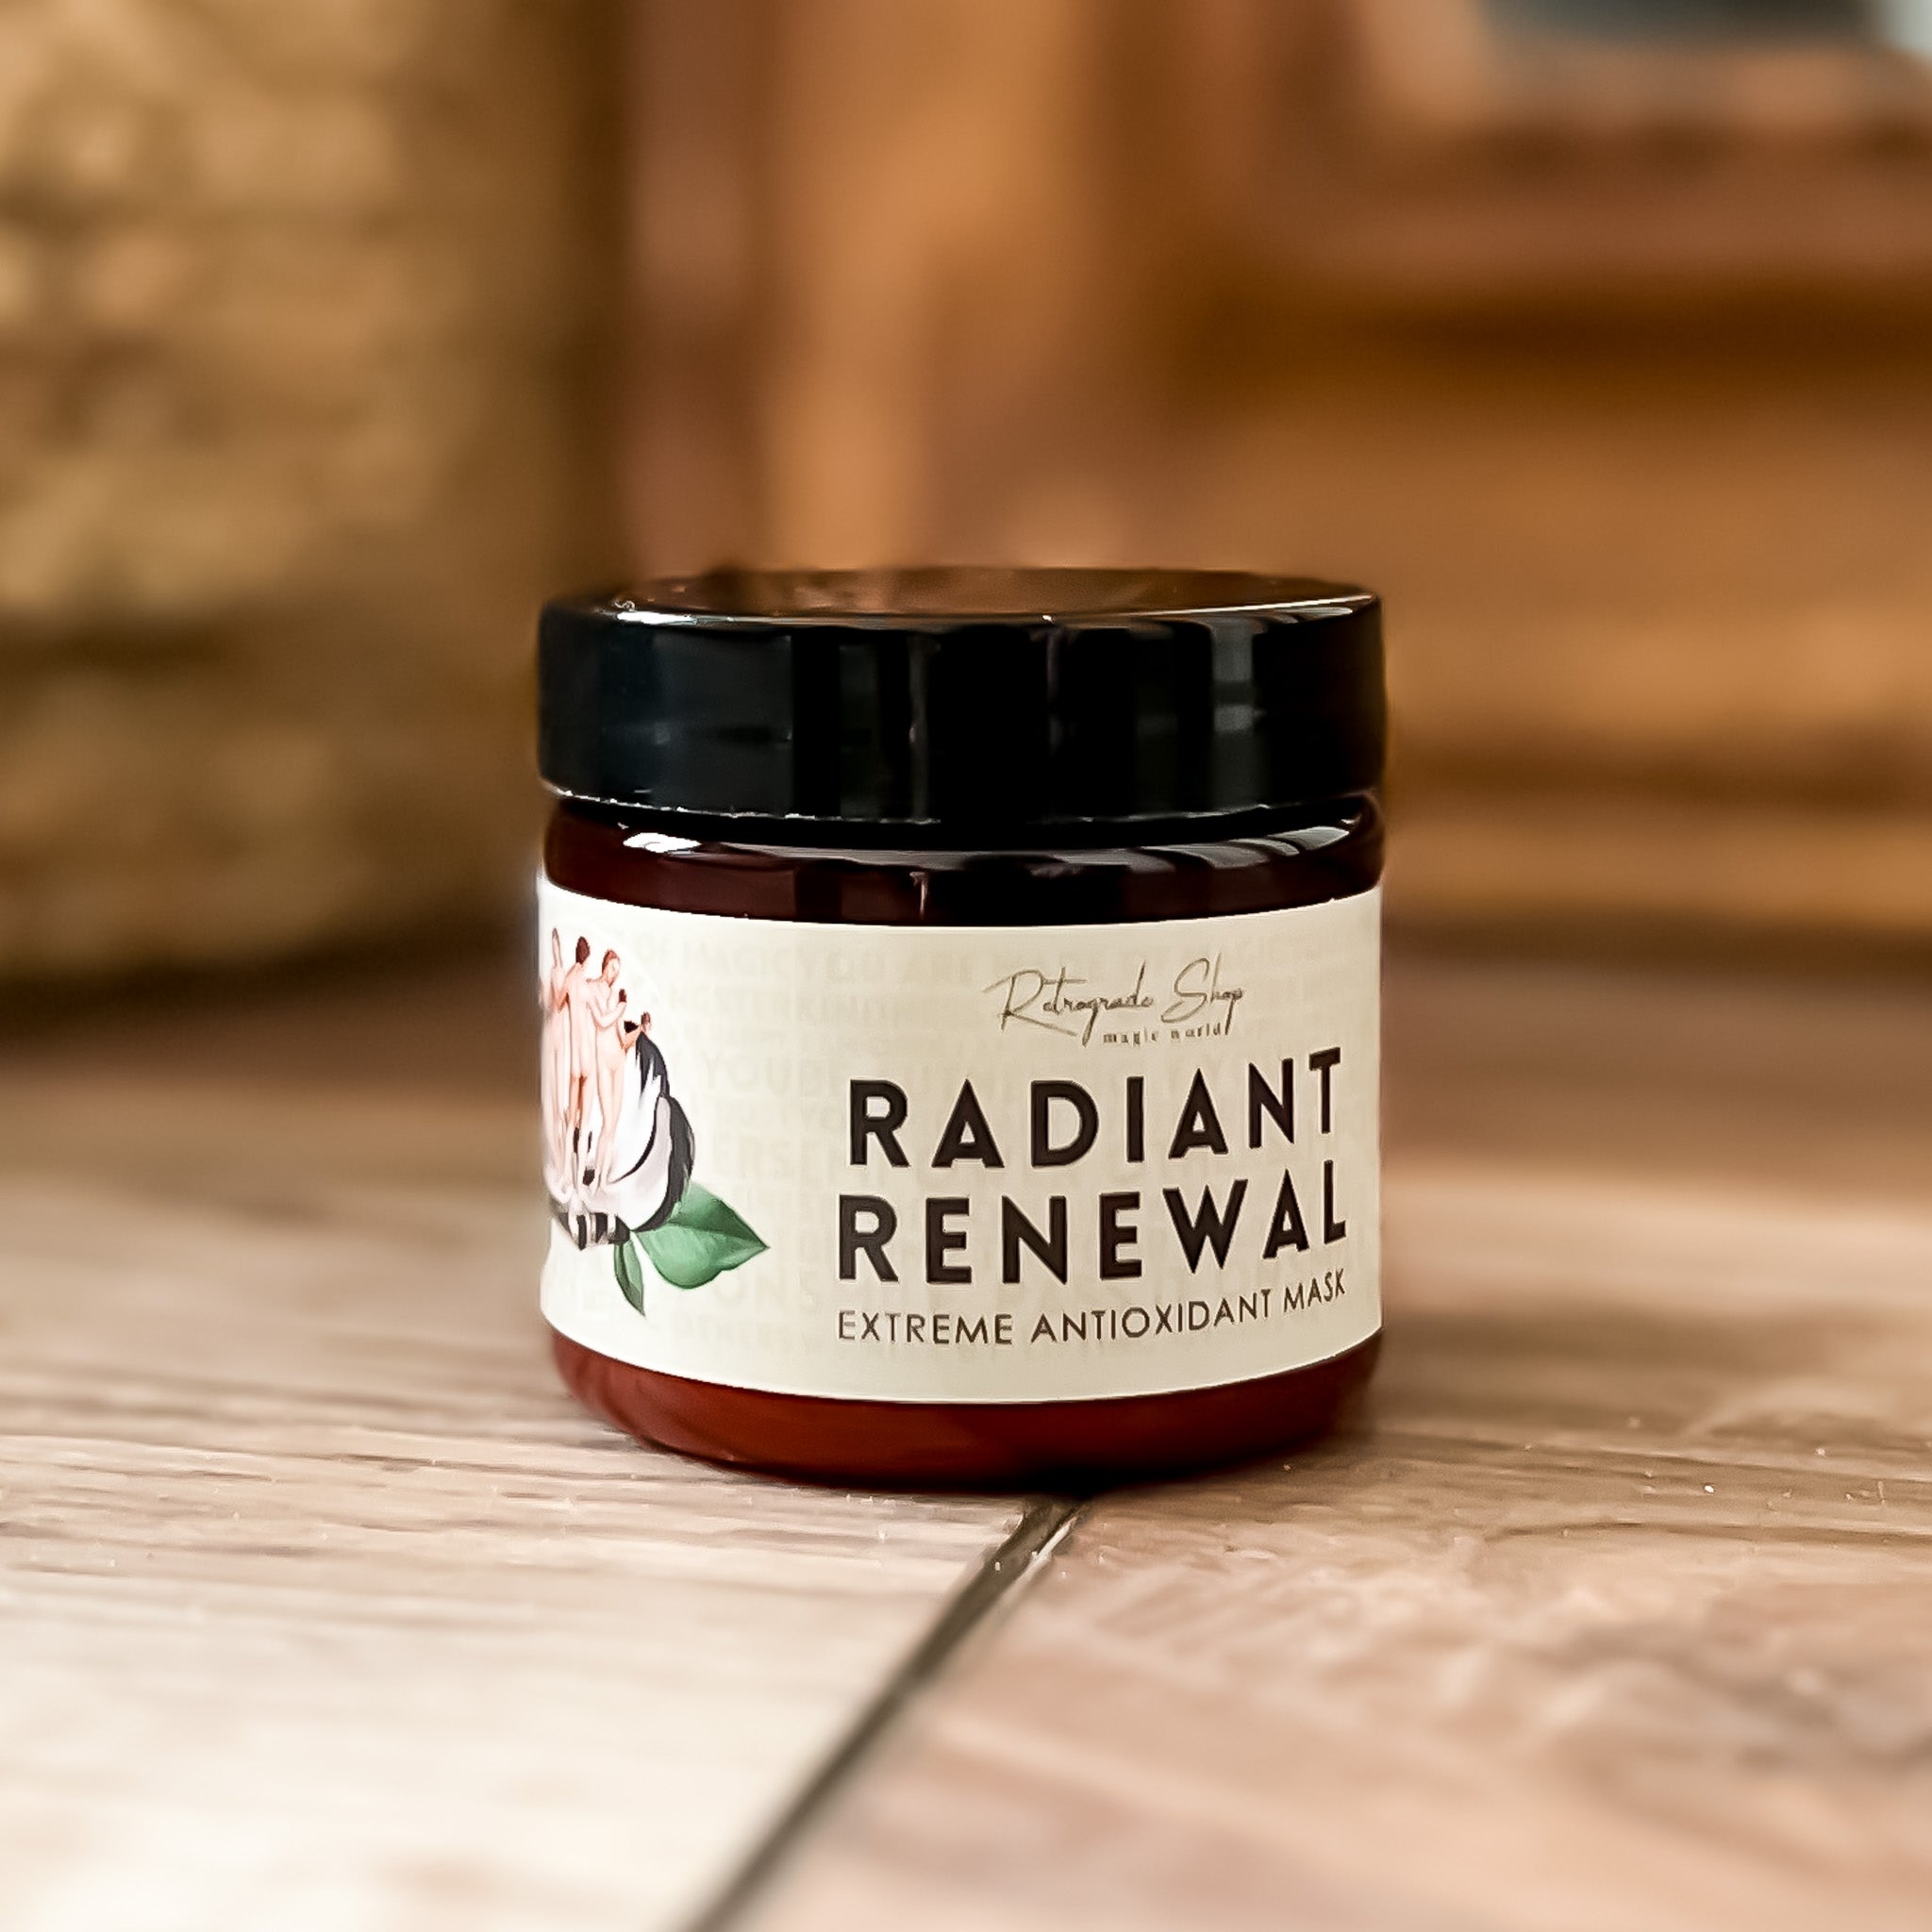 Radiant Renewal Extreme Antioxidant Face Mask